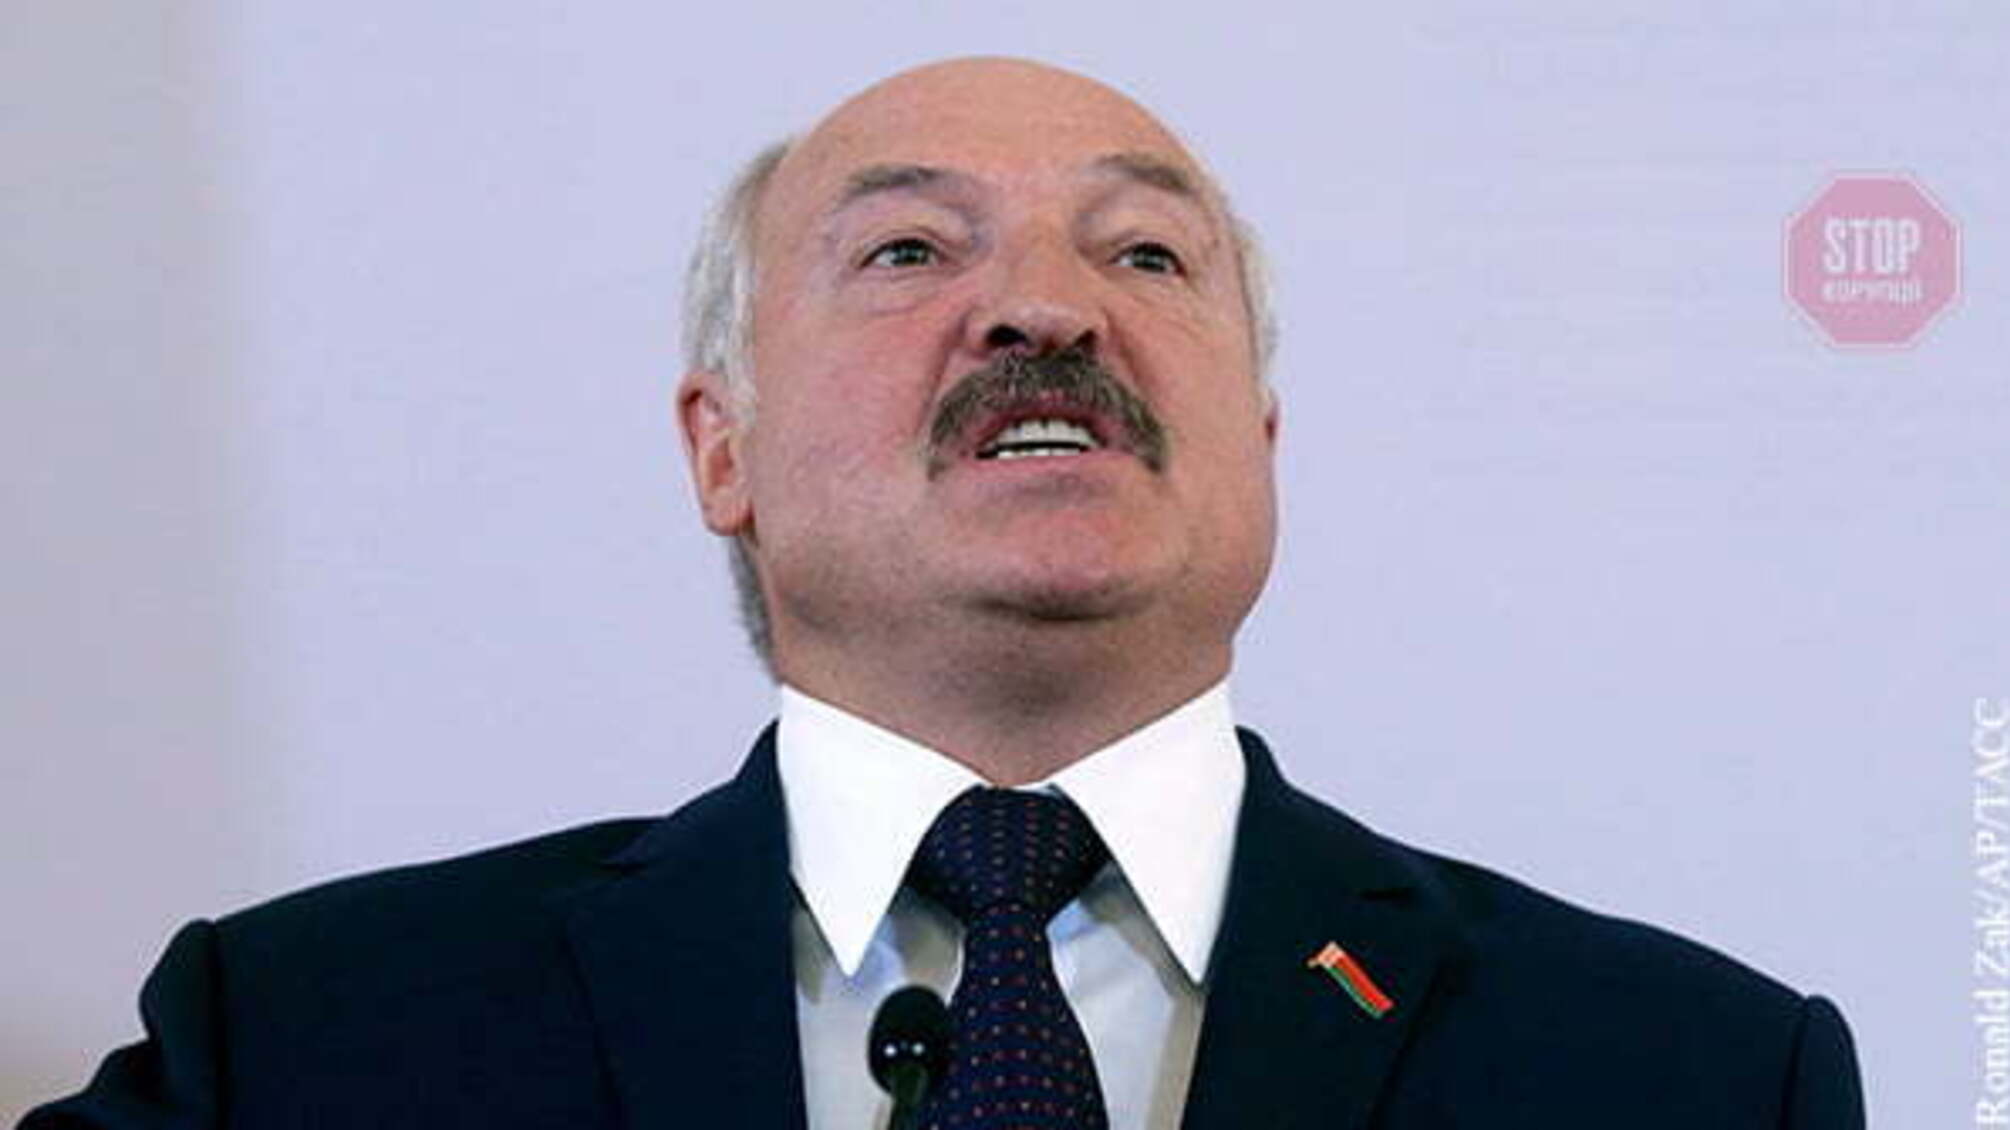 Лукашенко: Беларусь не будет принимать самолеты из Украины